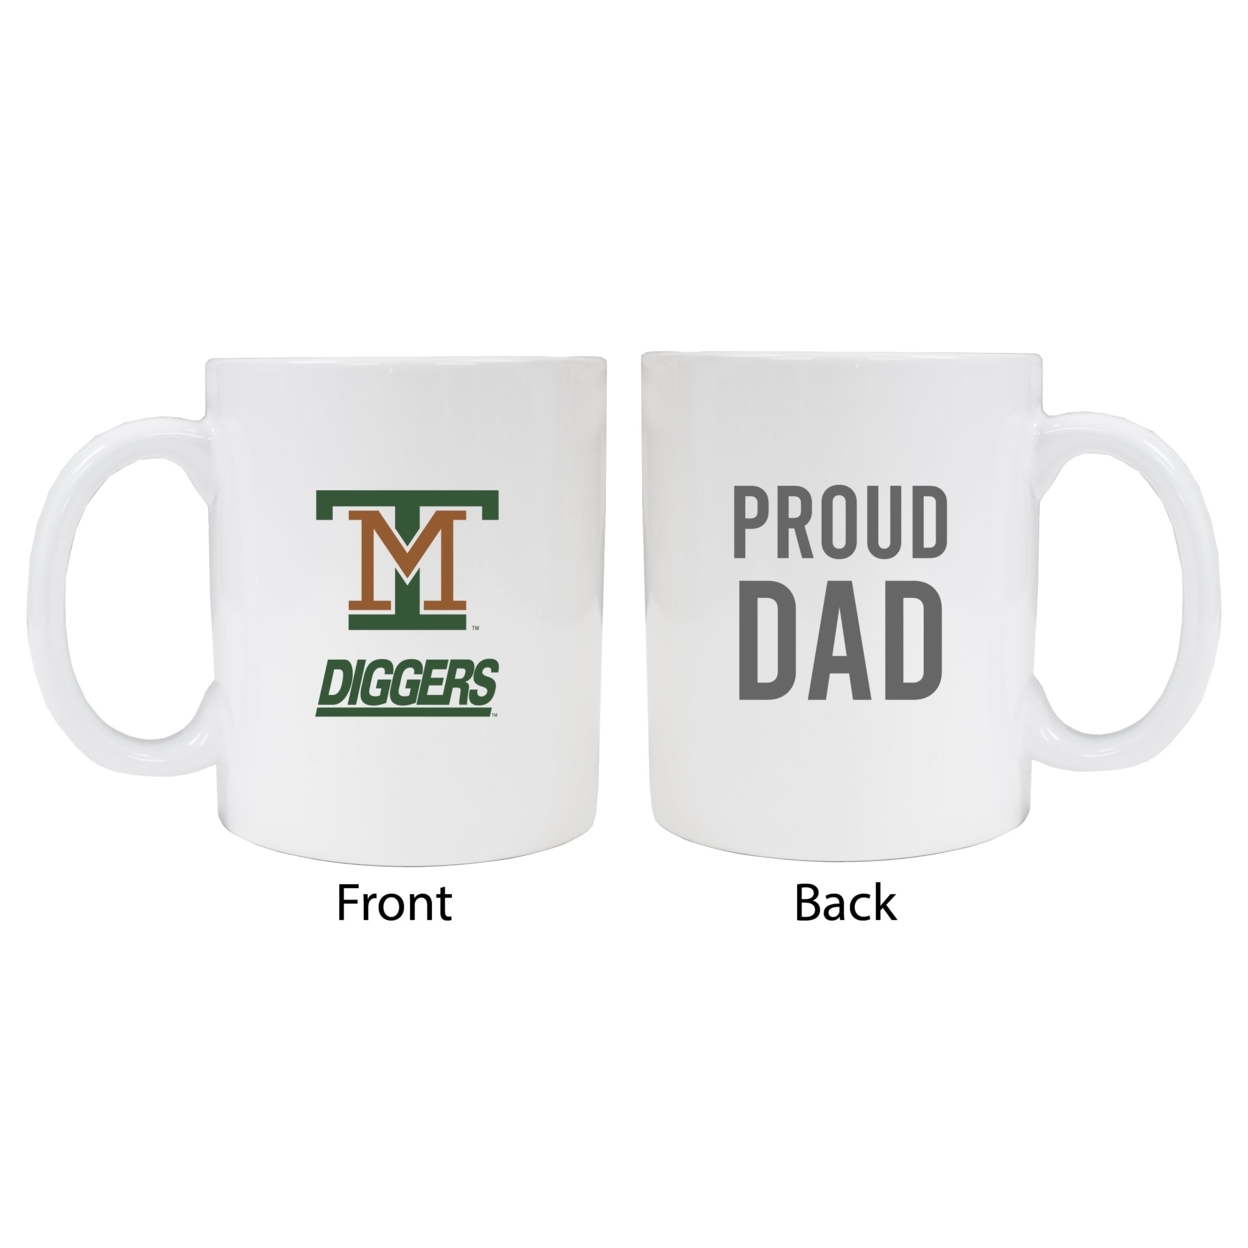 Montana Tech Proud Dad Ceramic Coffee Mug - White (2 Pack)